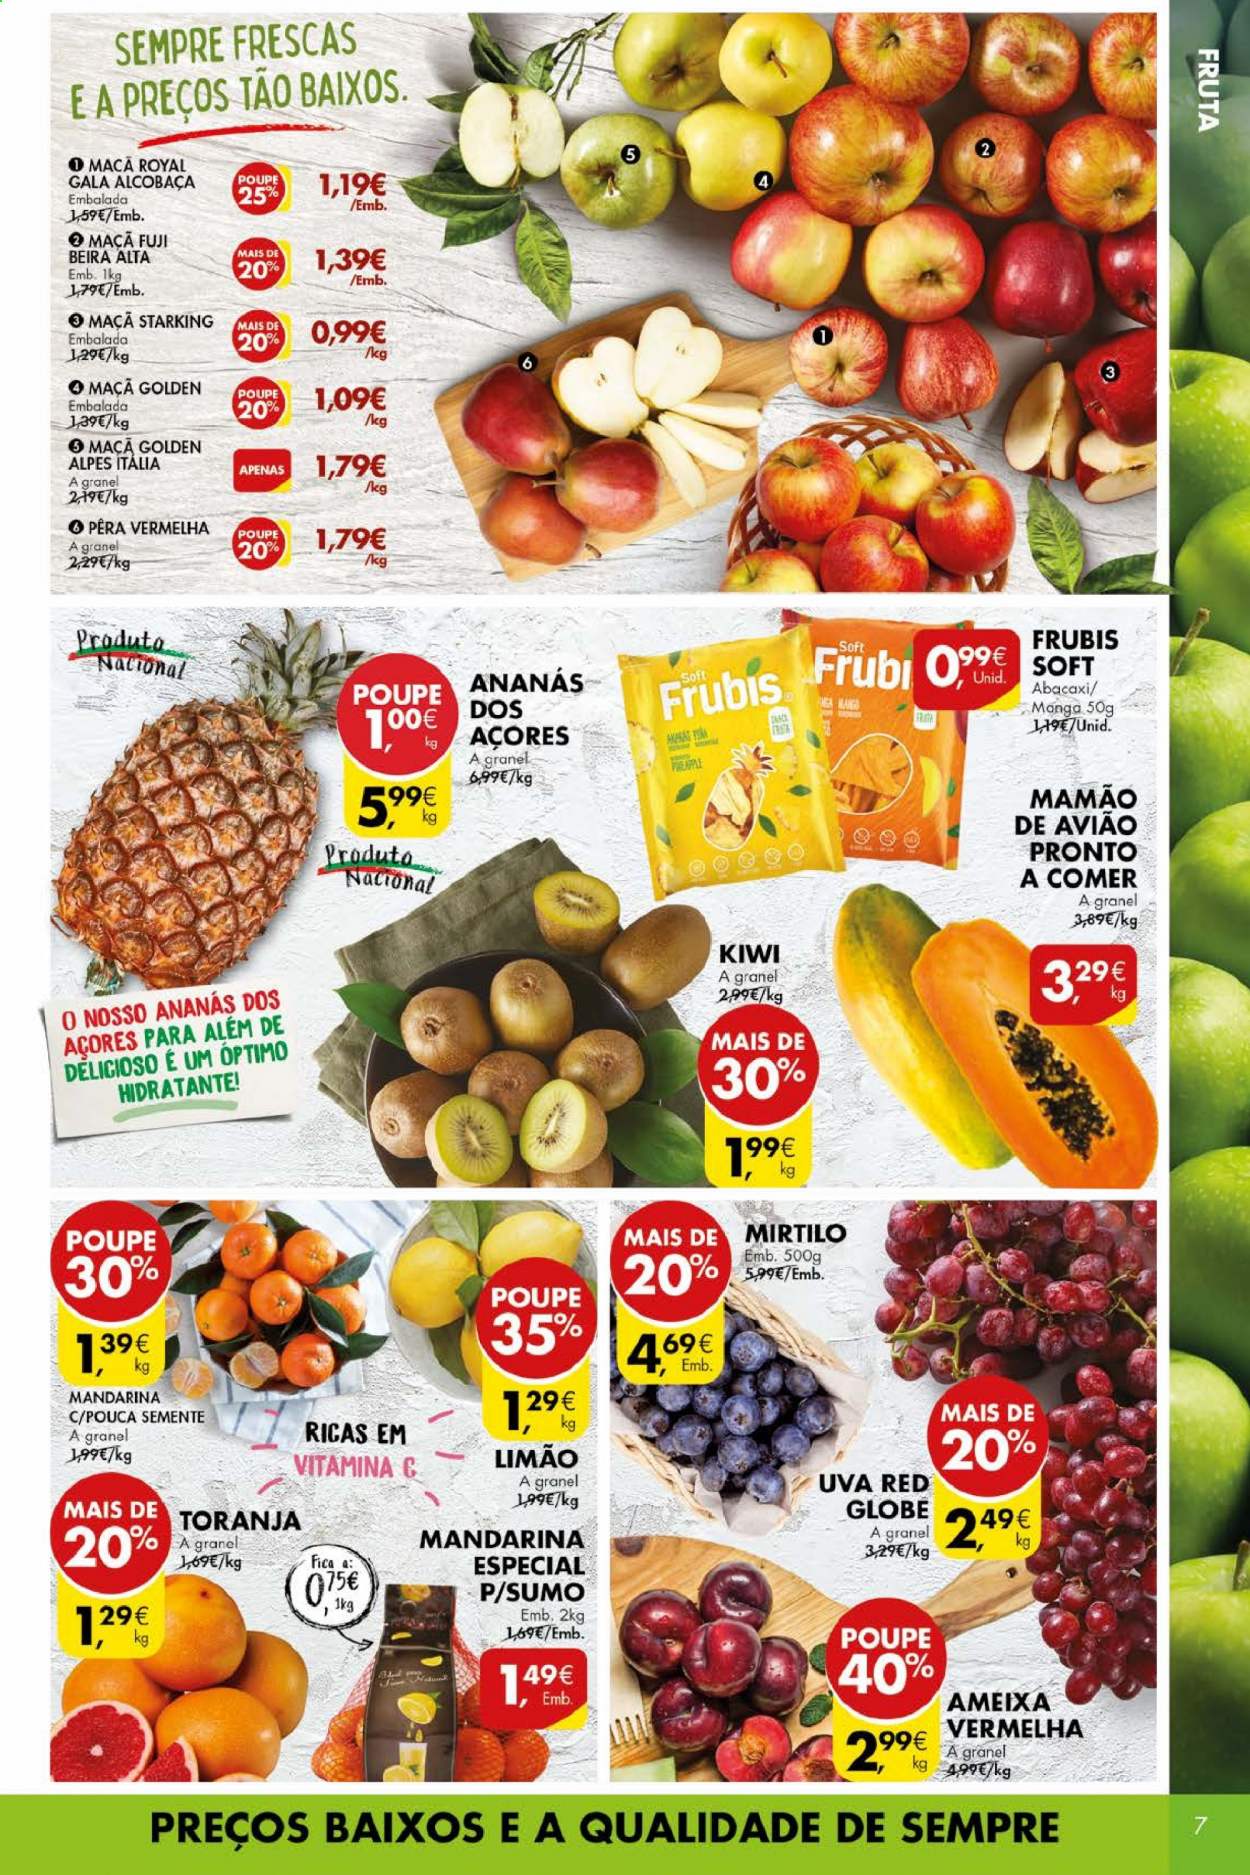 thumbnail - Folheto Pingo Doce - 16.2.2021 - 22.2.2021 - Produtos em promoção - maçã, abacaxi, kiwi, uva, mirtilo, limão, mamão, mandarina, Vitamina C. Página 7.